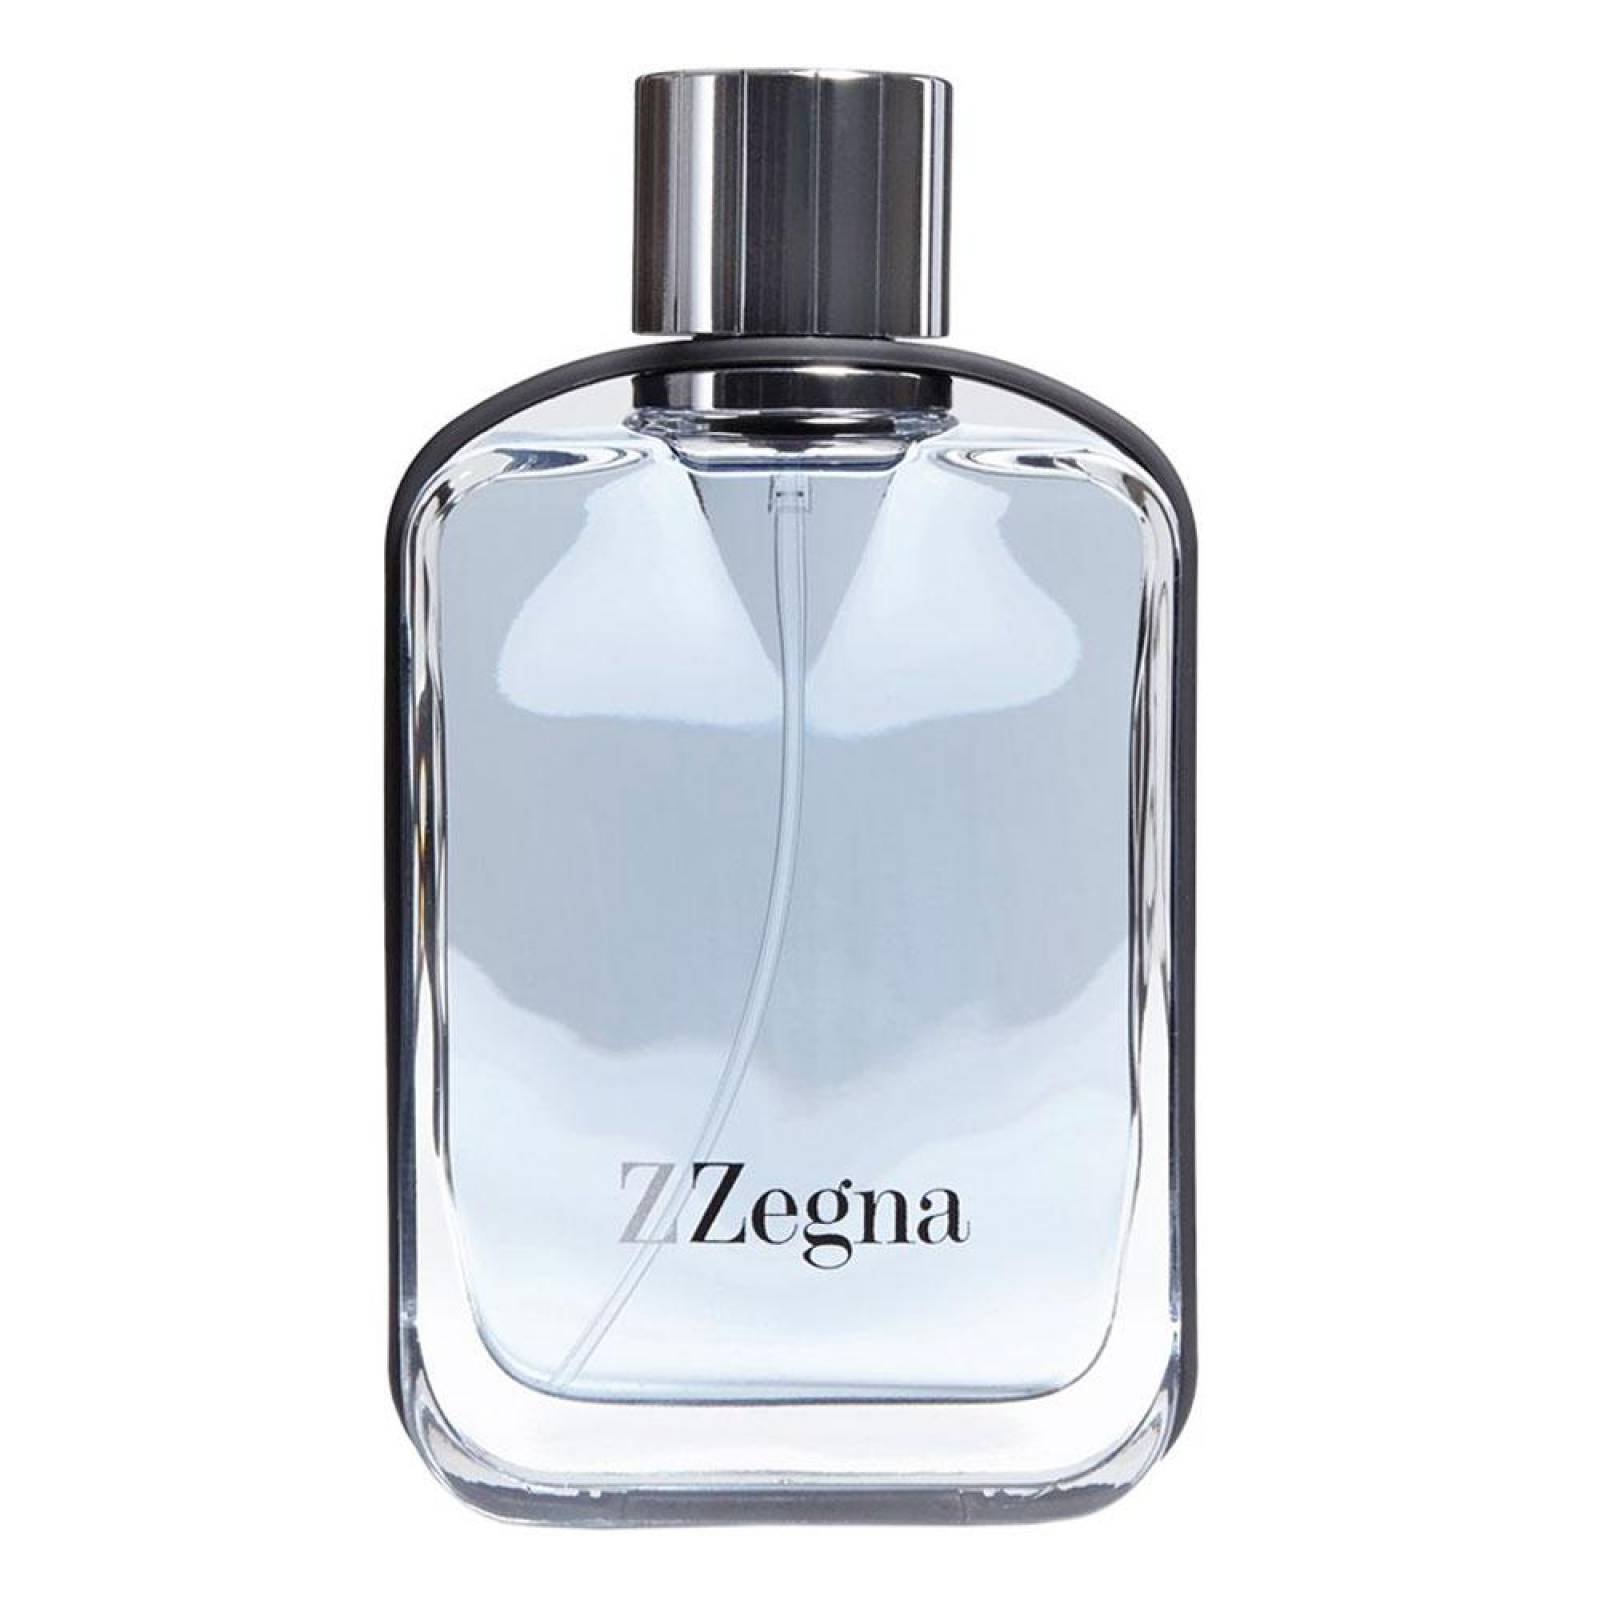 Loción Zegna Cologne de Ermenegildo Zegna EDT 100 ml